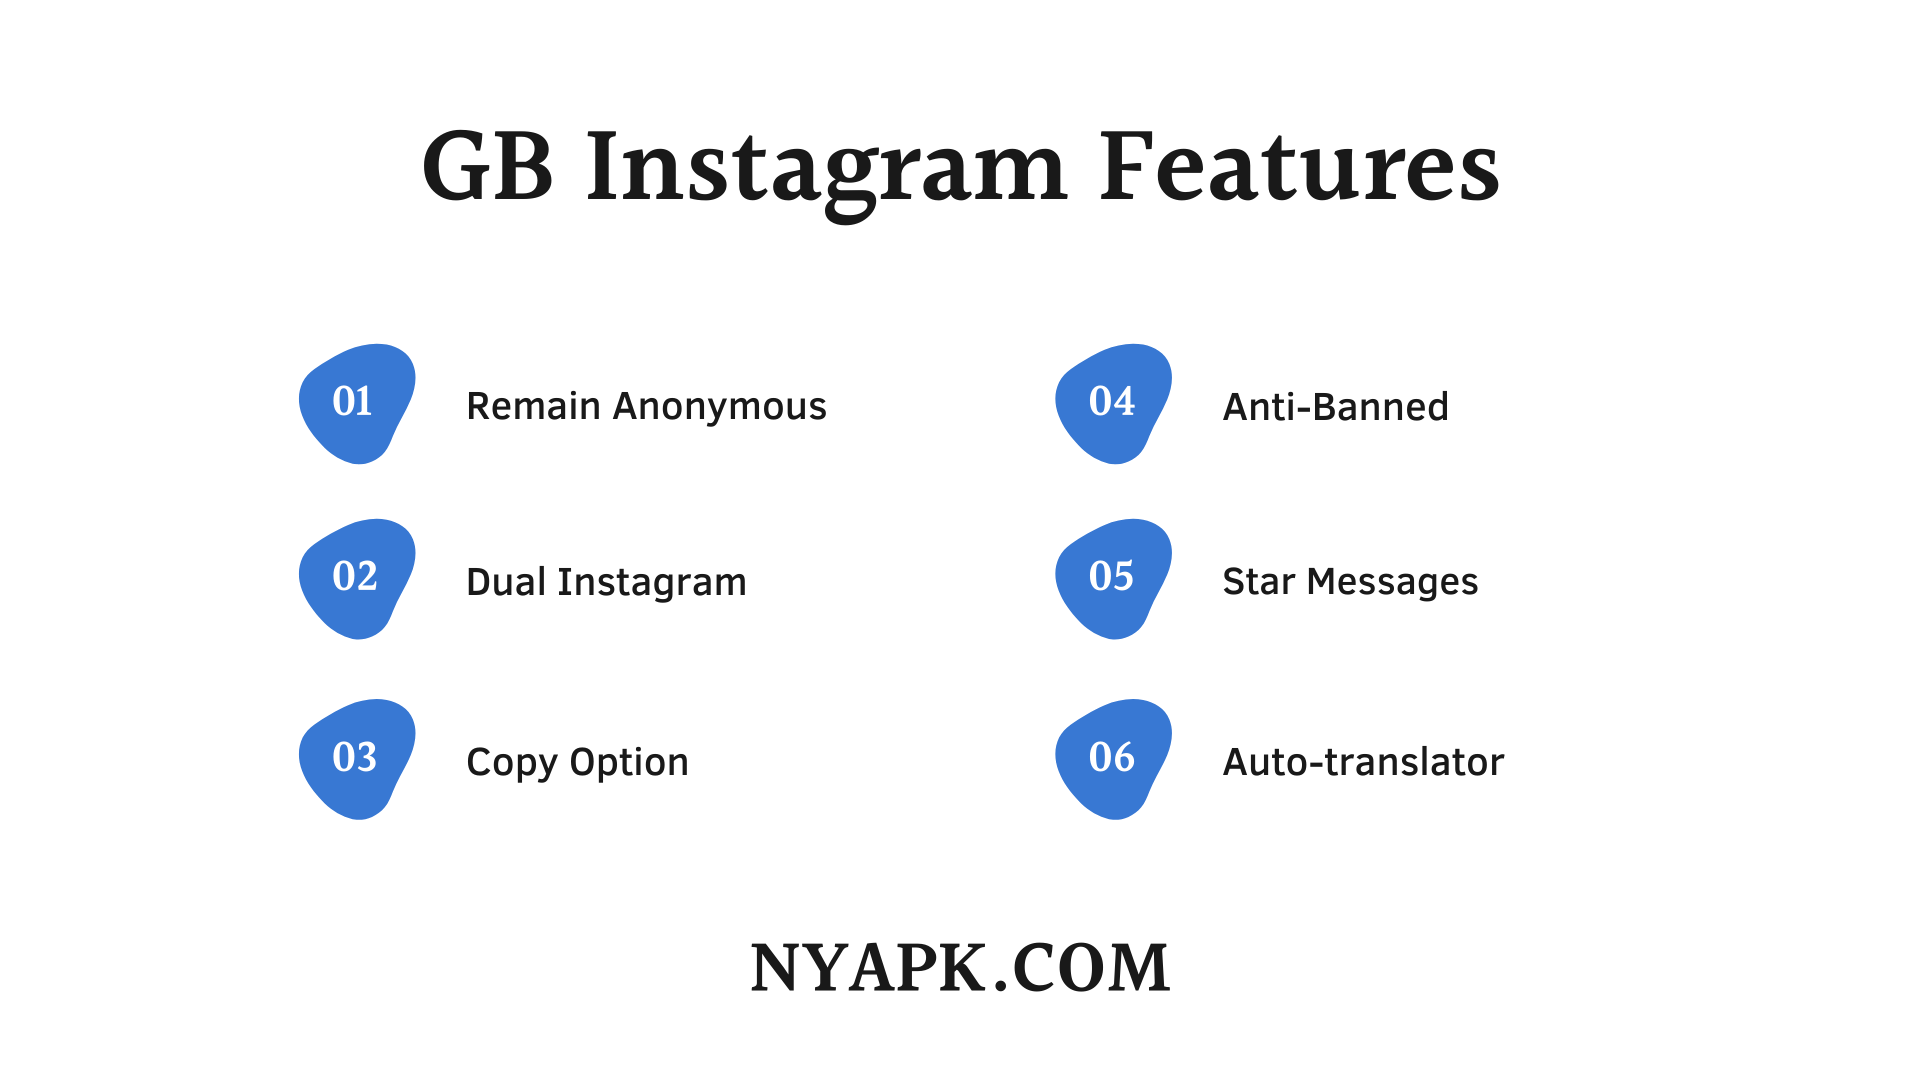 GB Instagram Features